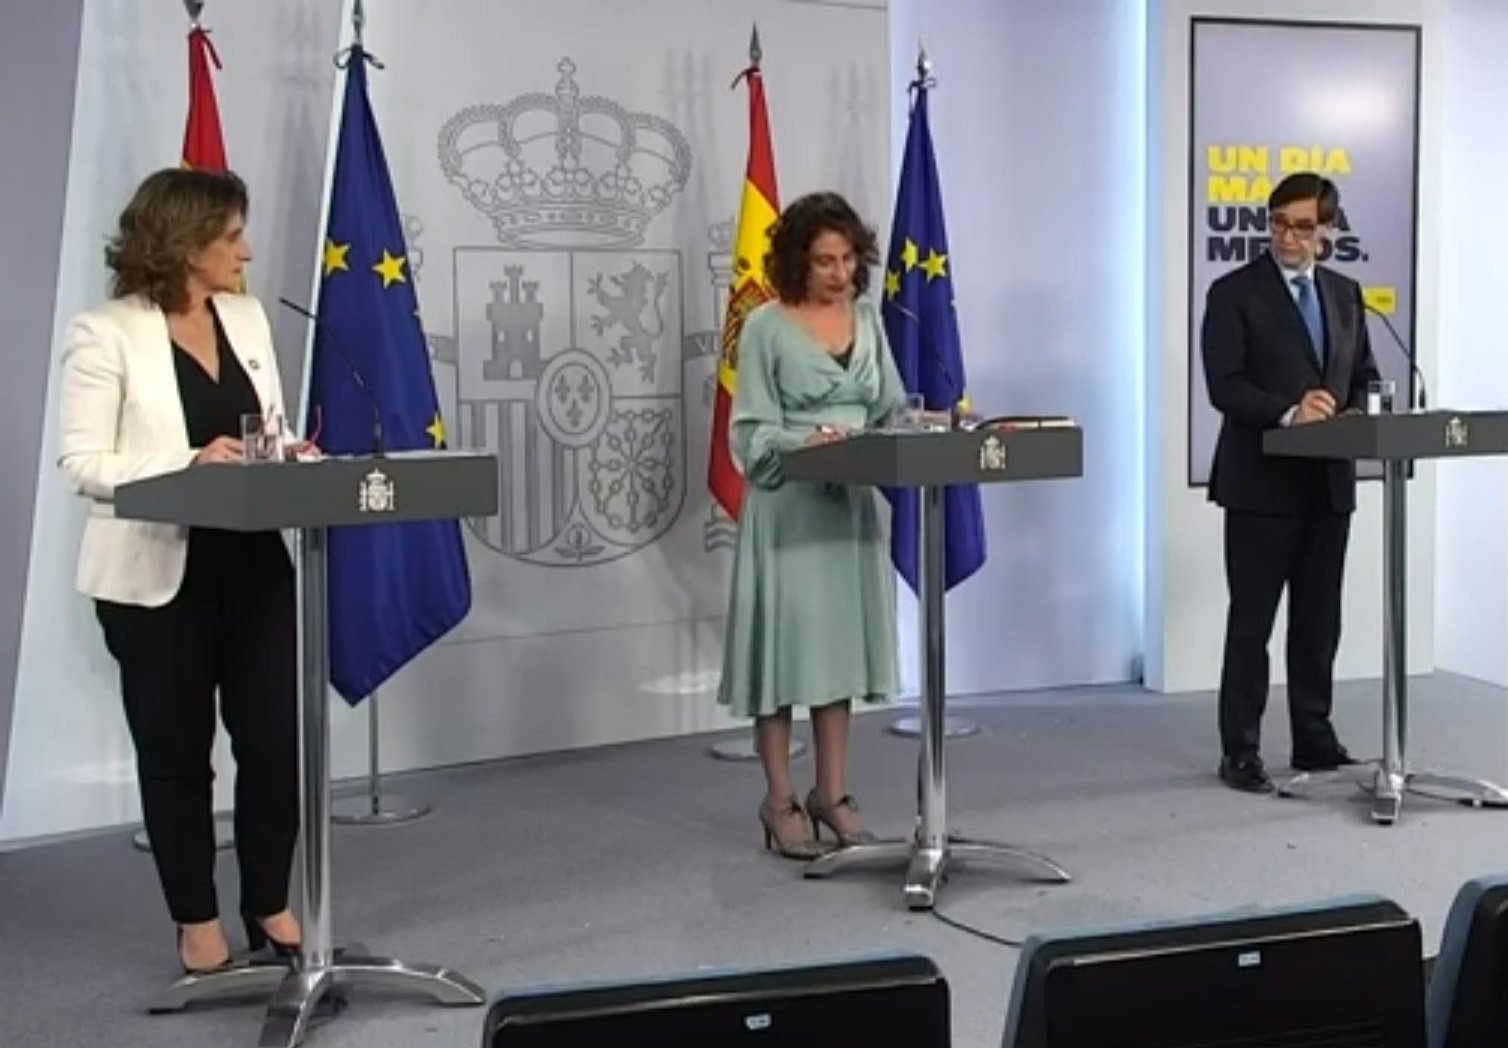 El govern espanyol desvincula la taula de diàleg de l'acord amb Cs